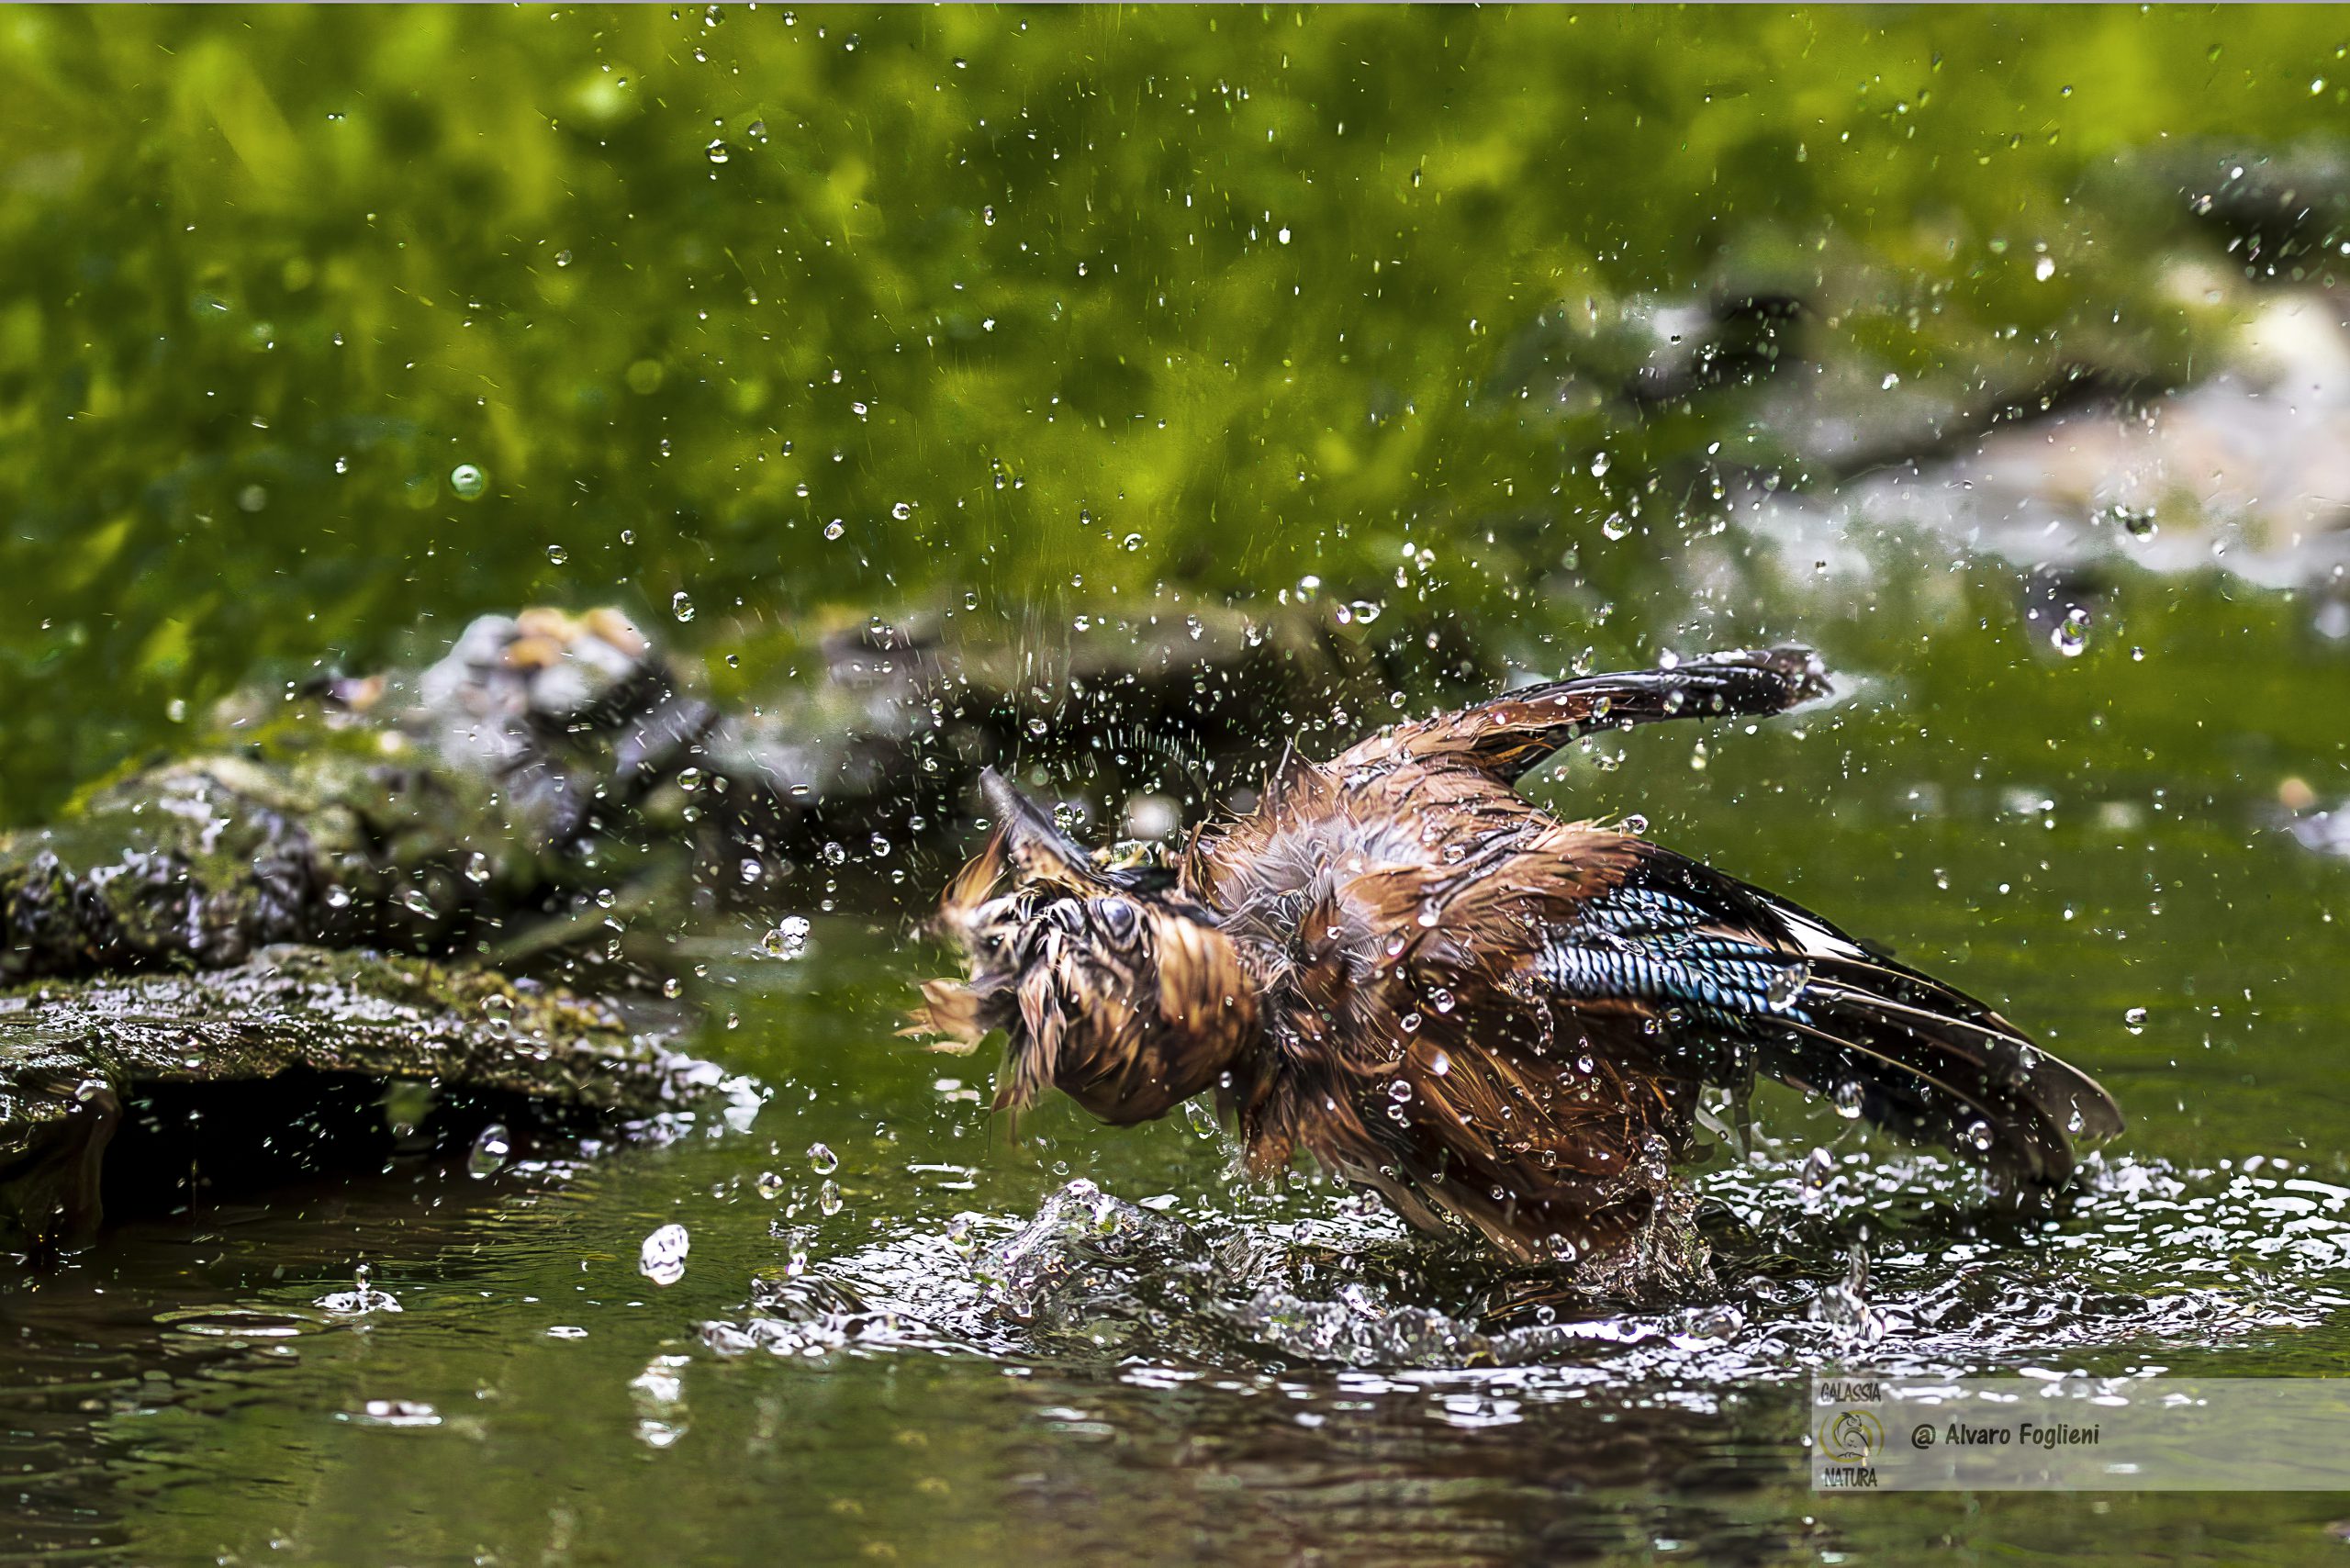 Emergere dall'acqua sbattendo le ali: pulizia delle piume